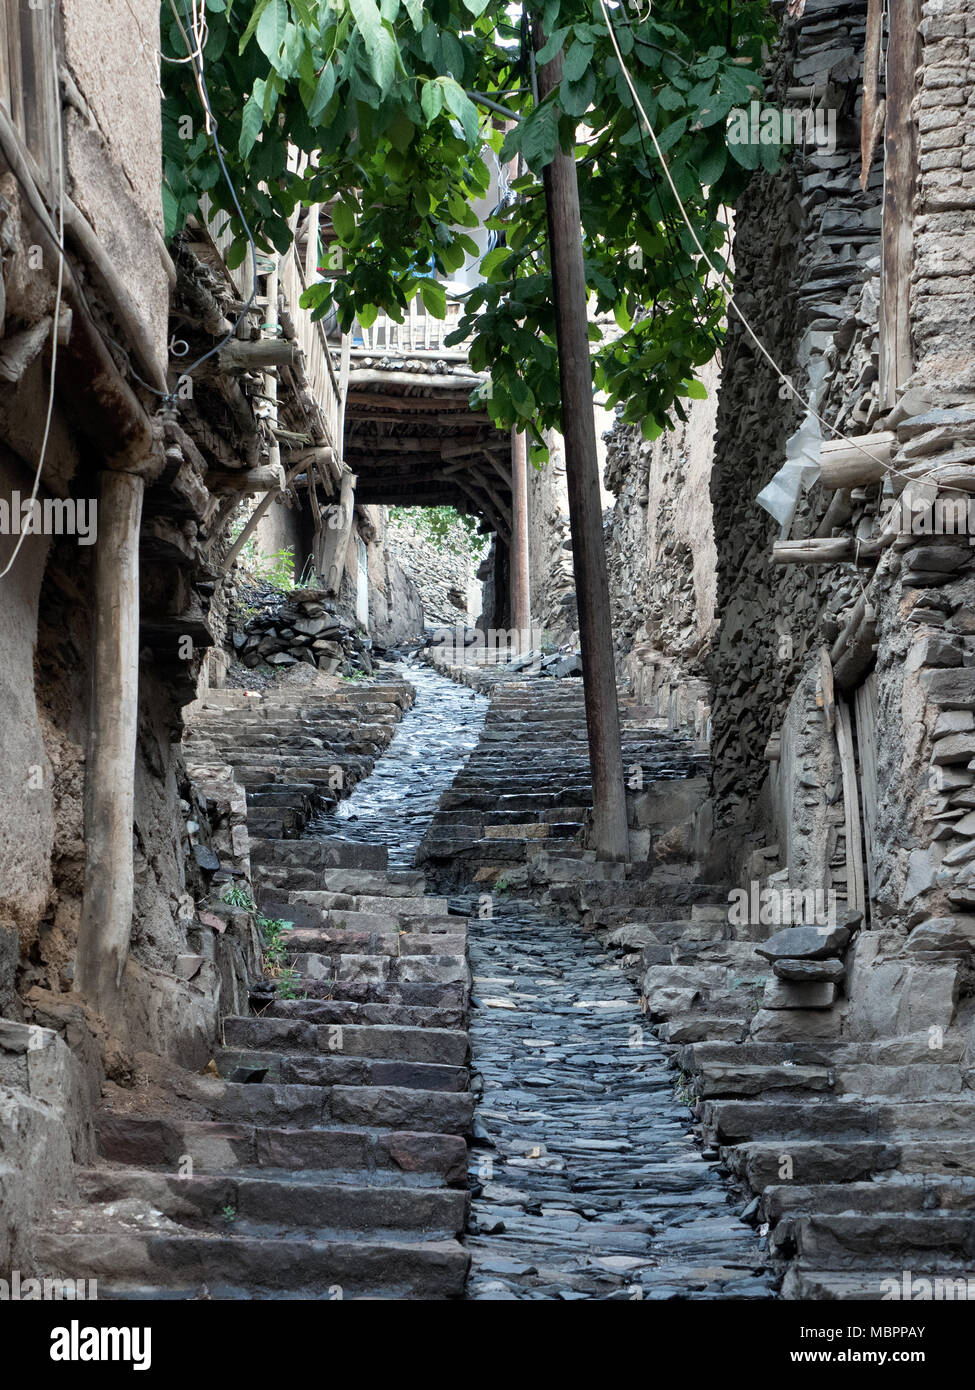 Steep narrow alley of Kang, historic village of northern Iran Stock Photo